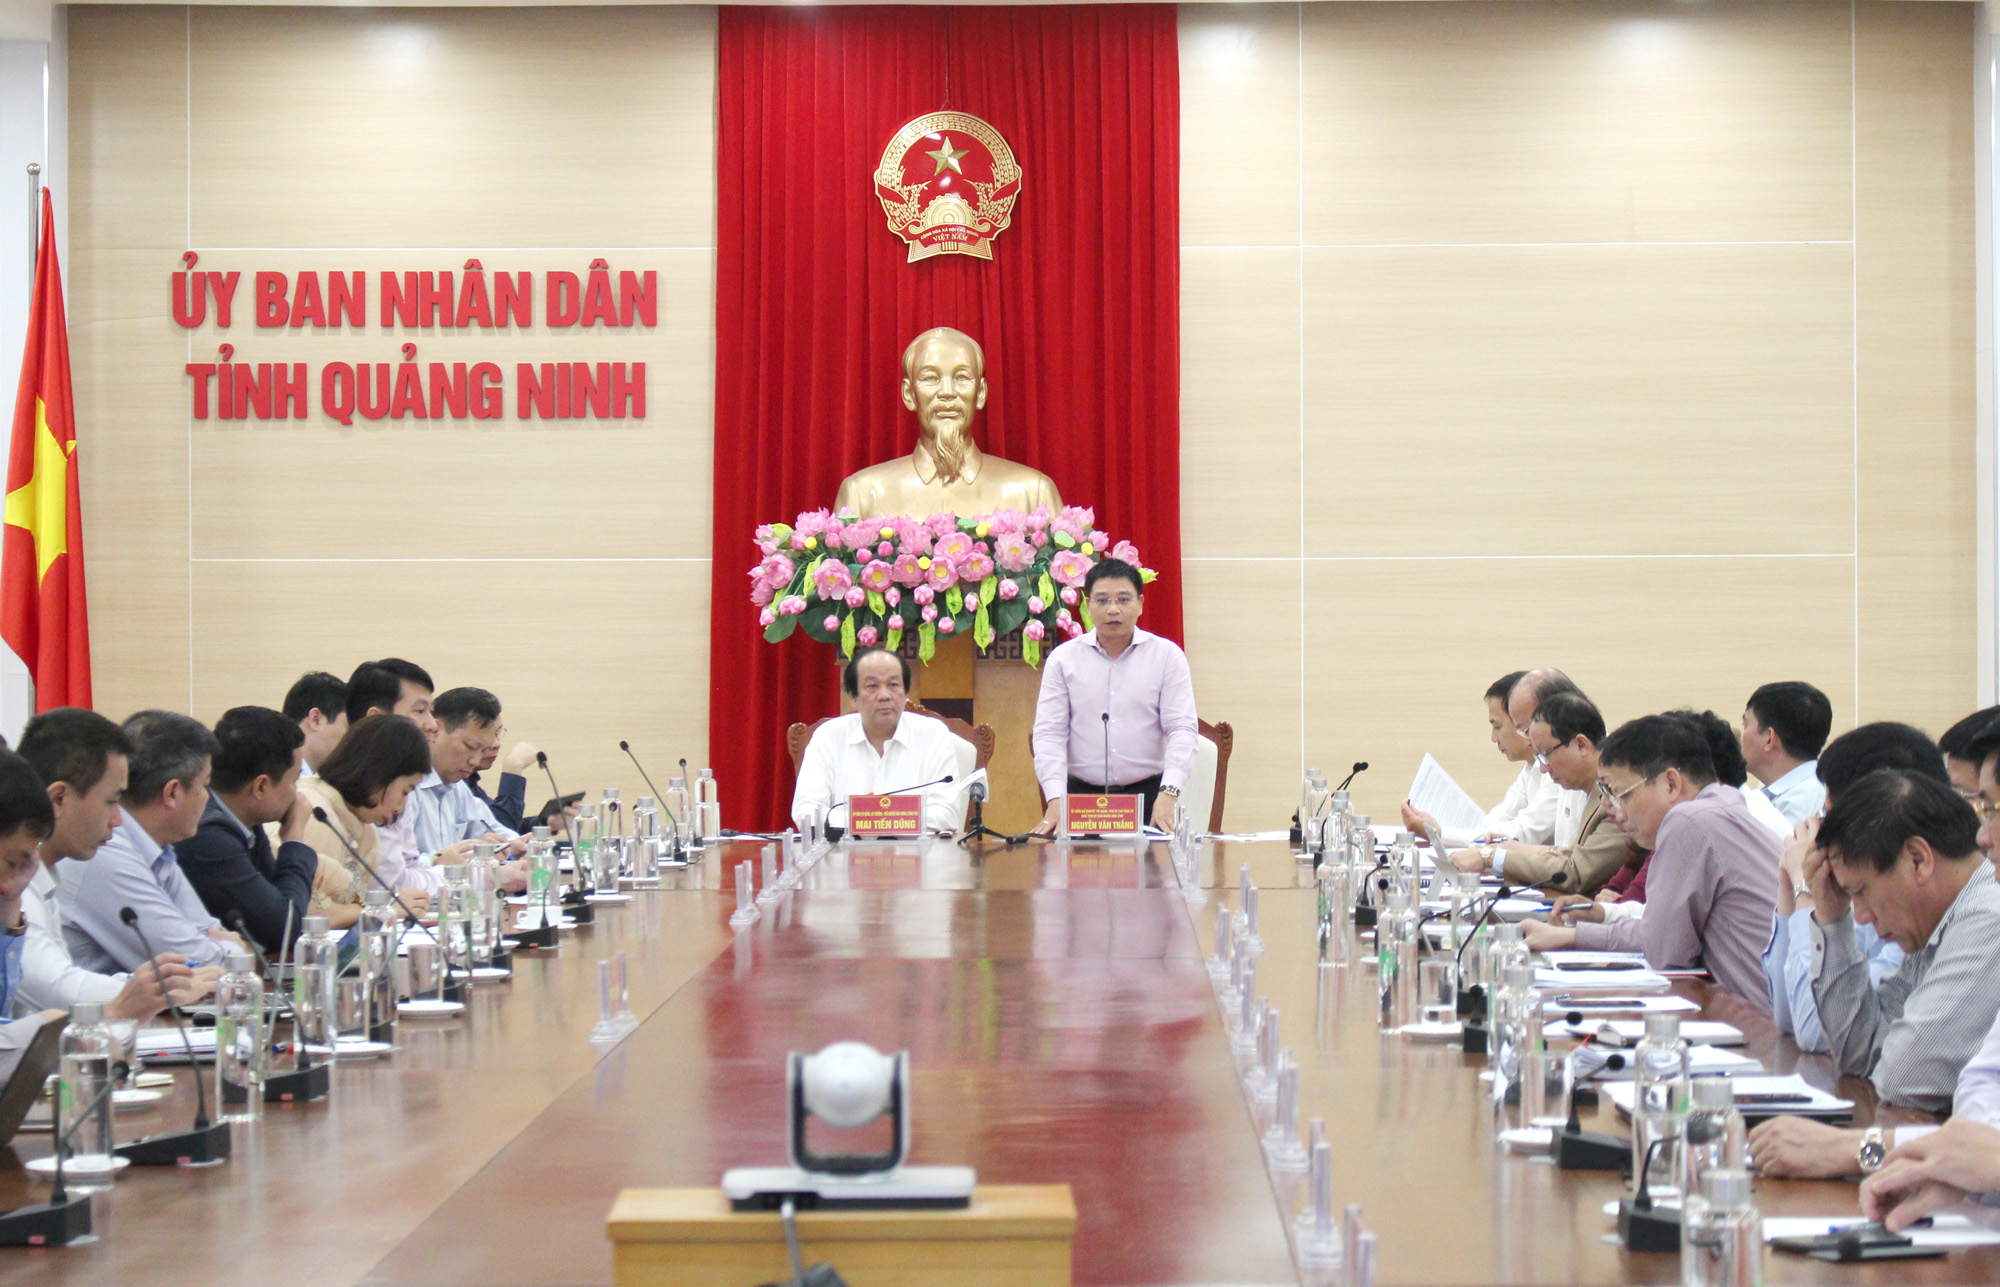 Đồng chí Nguyễn Văn Thắng, Chủ tịch UBND tỉnh, phát biểu tại buổi làm việc.